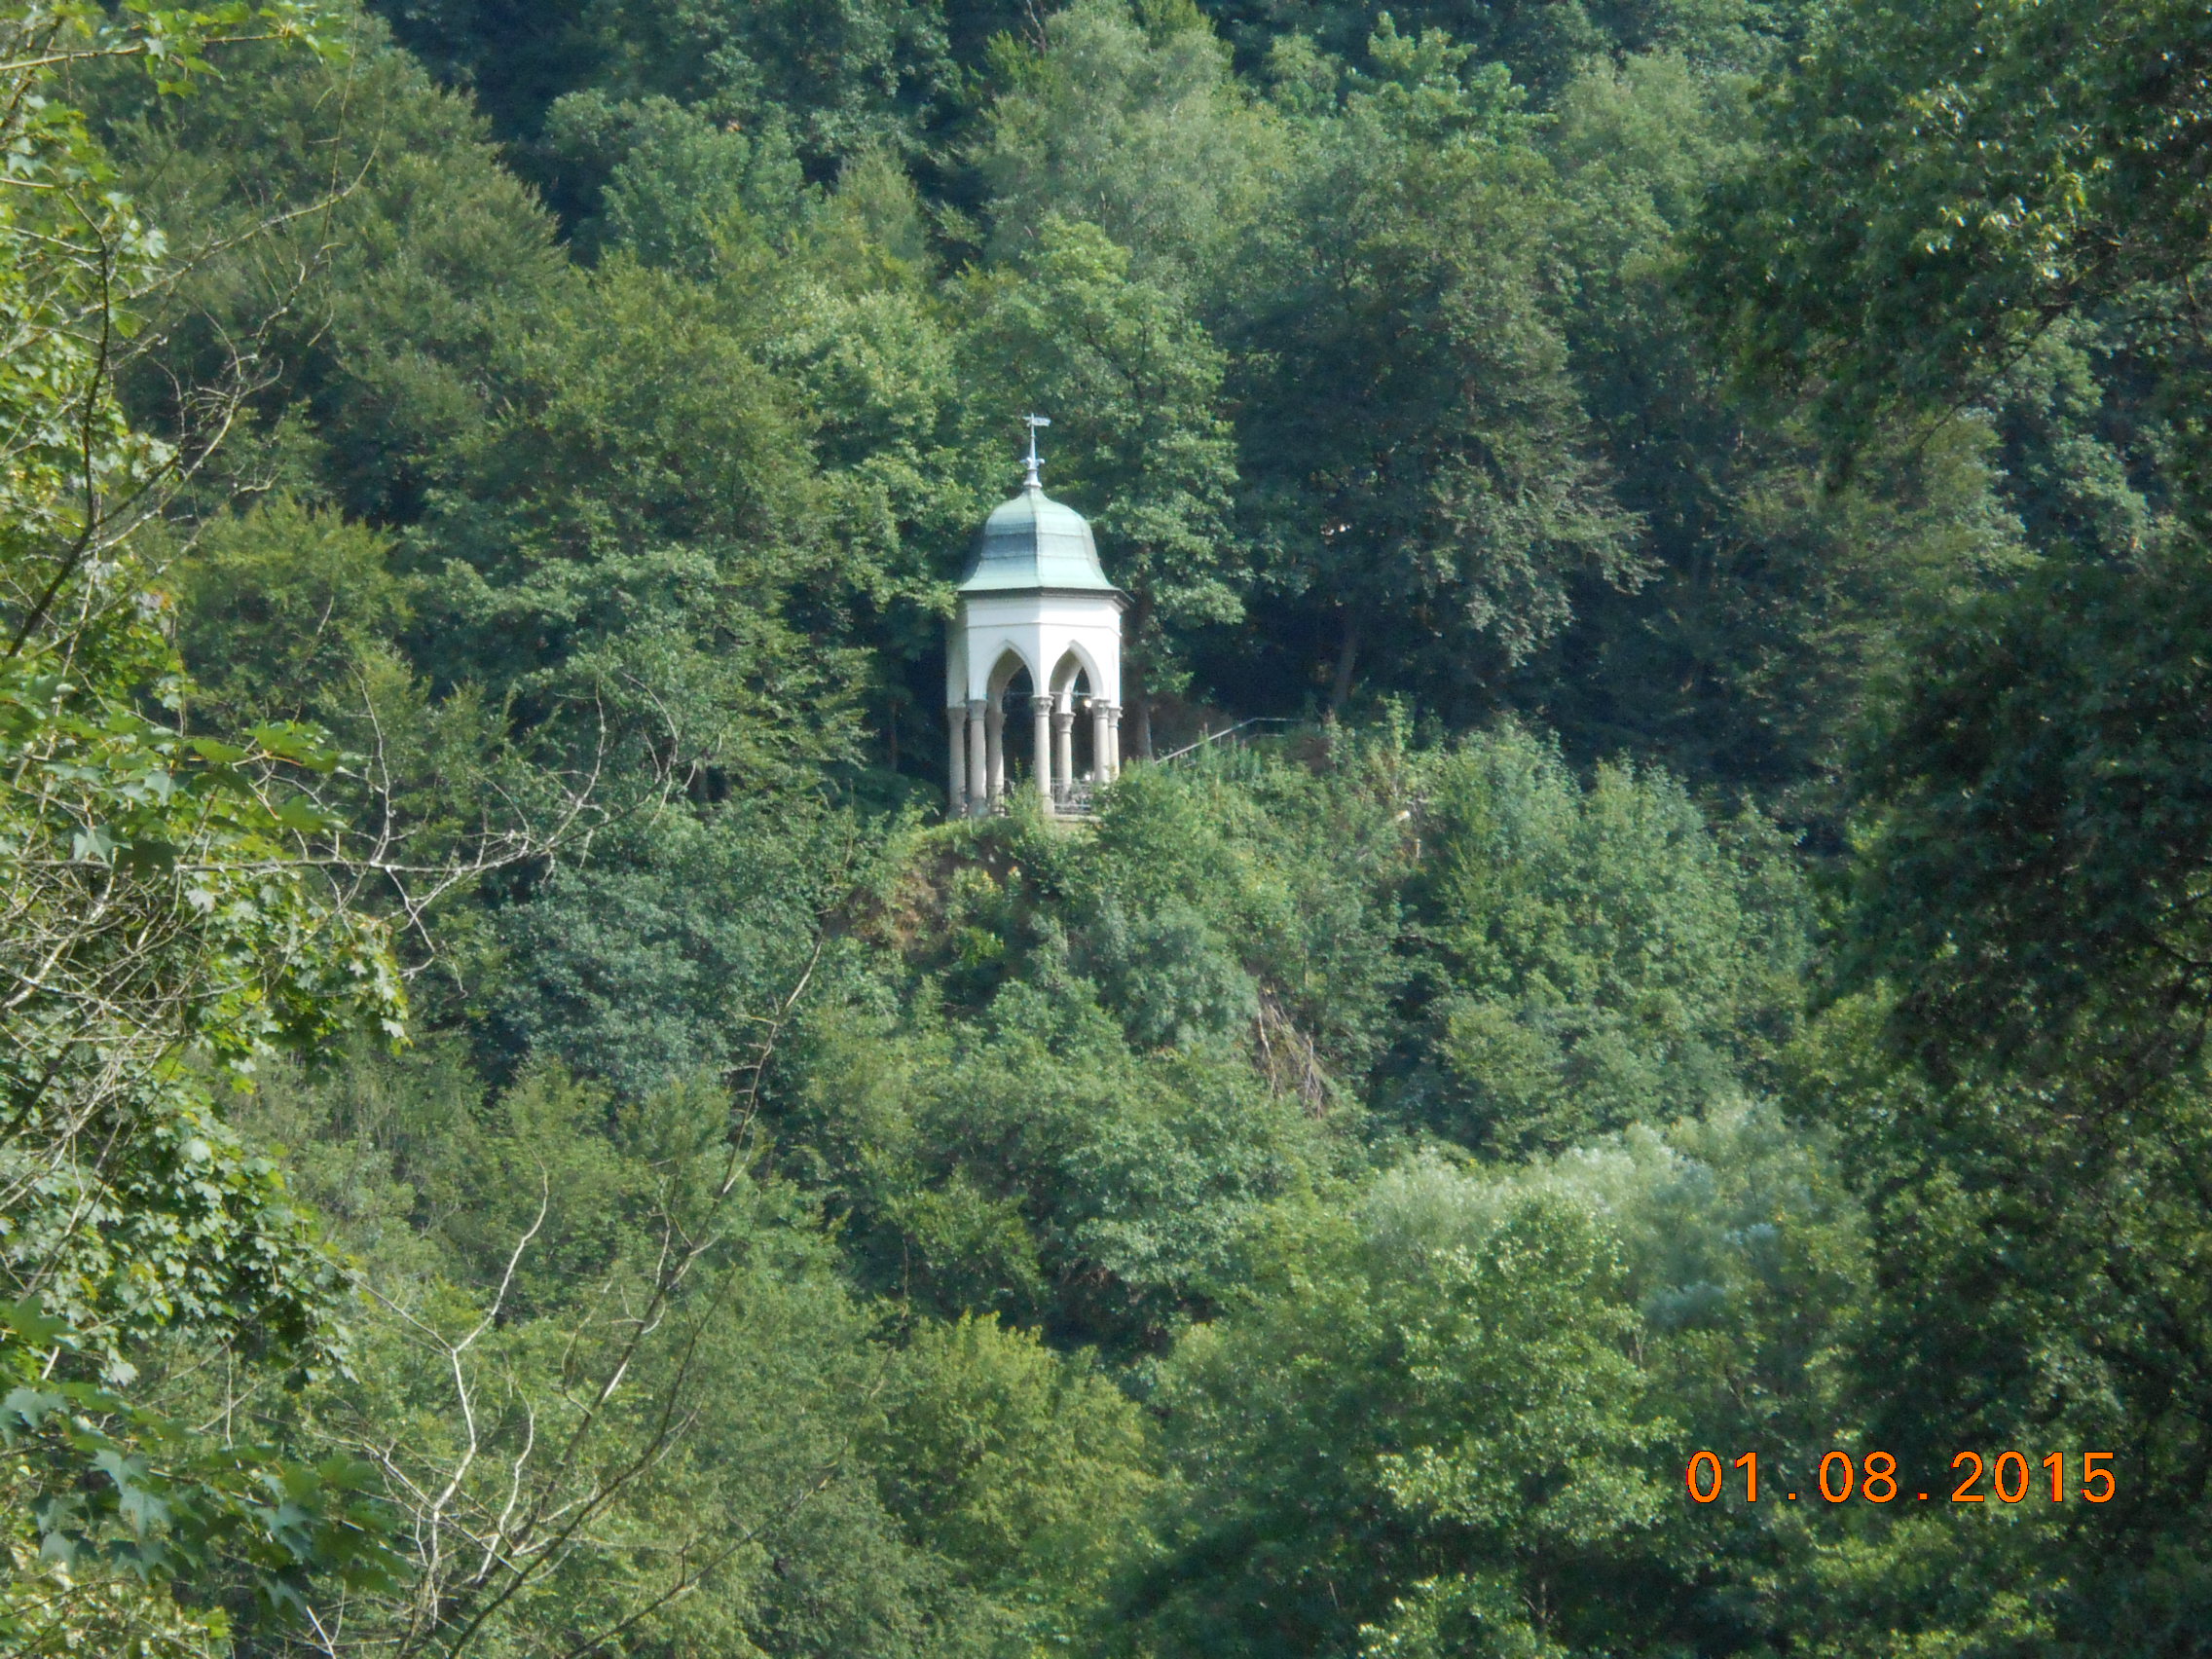 Blick zum Diederichs - Tempel von der Napoleonbrücke aus.